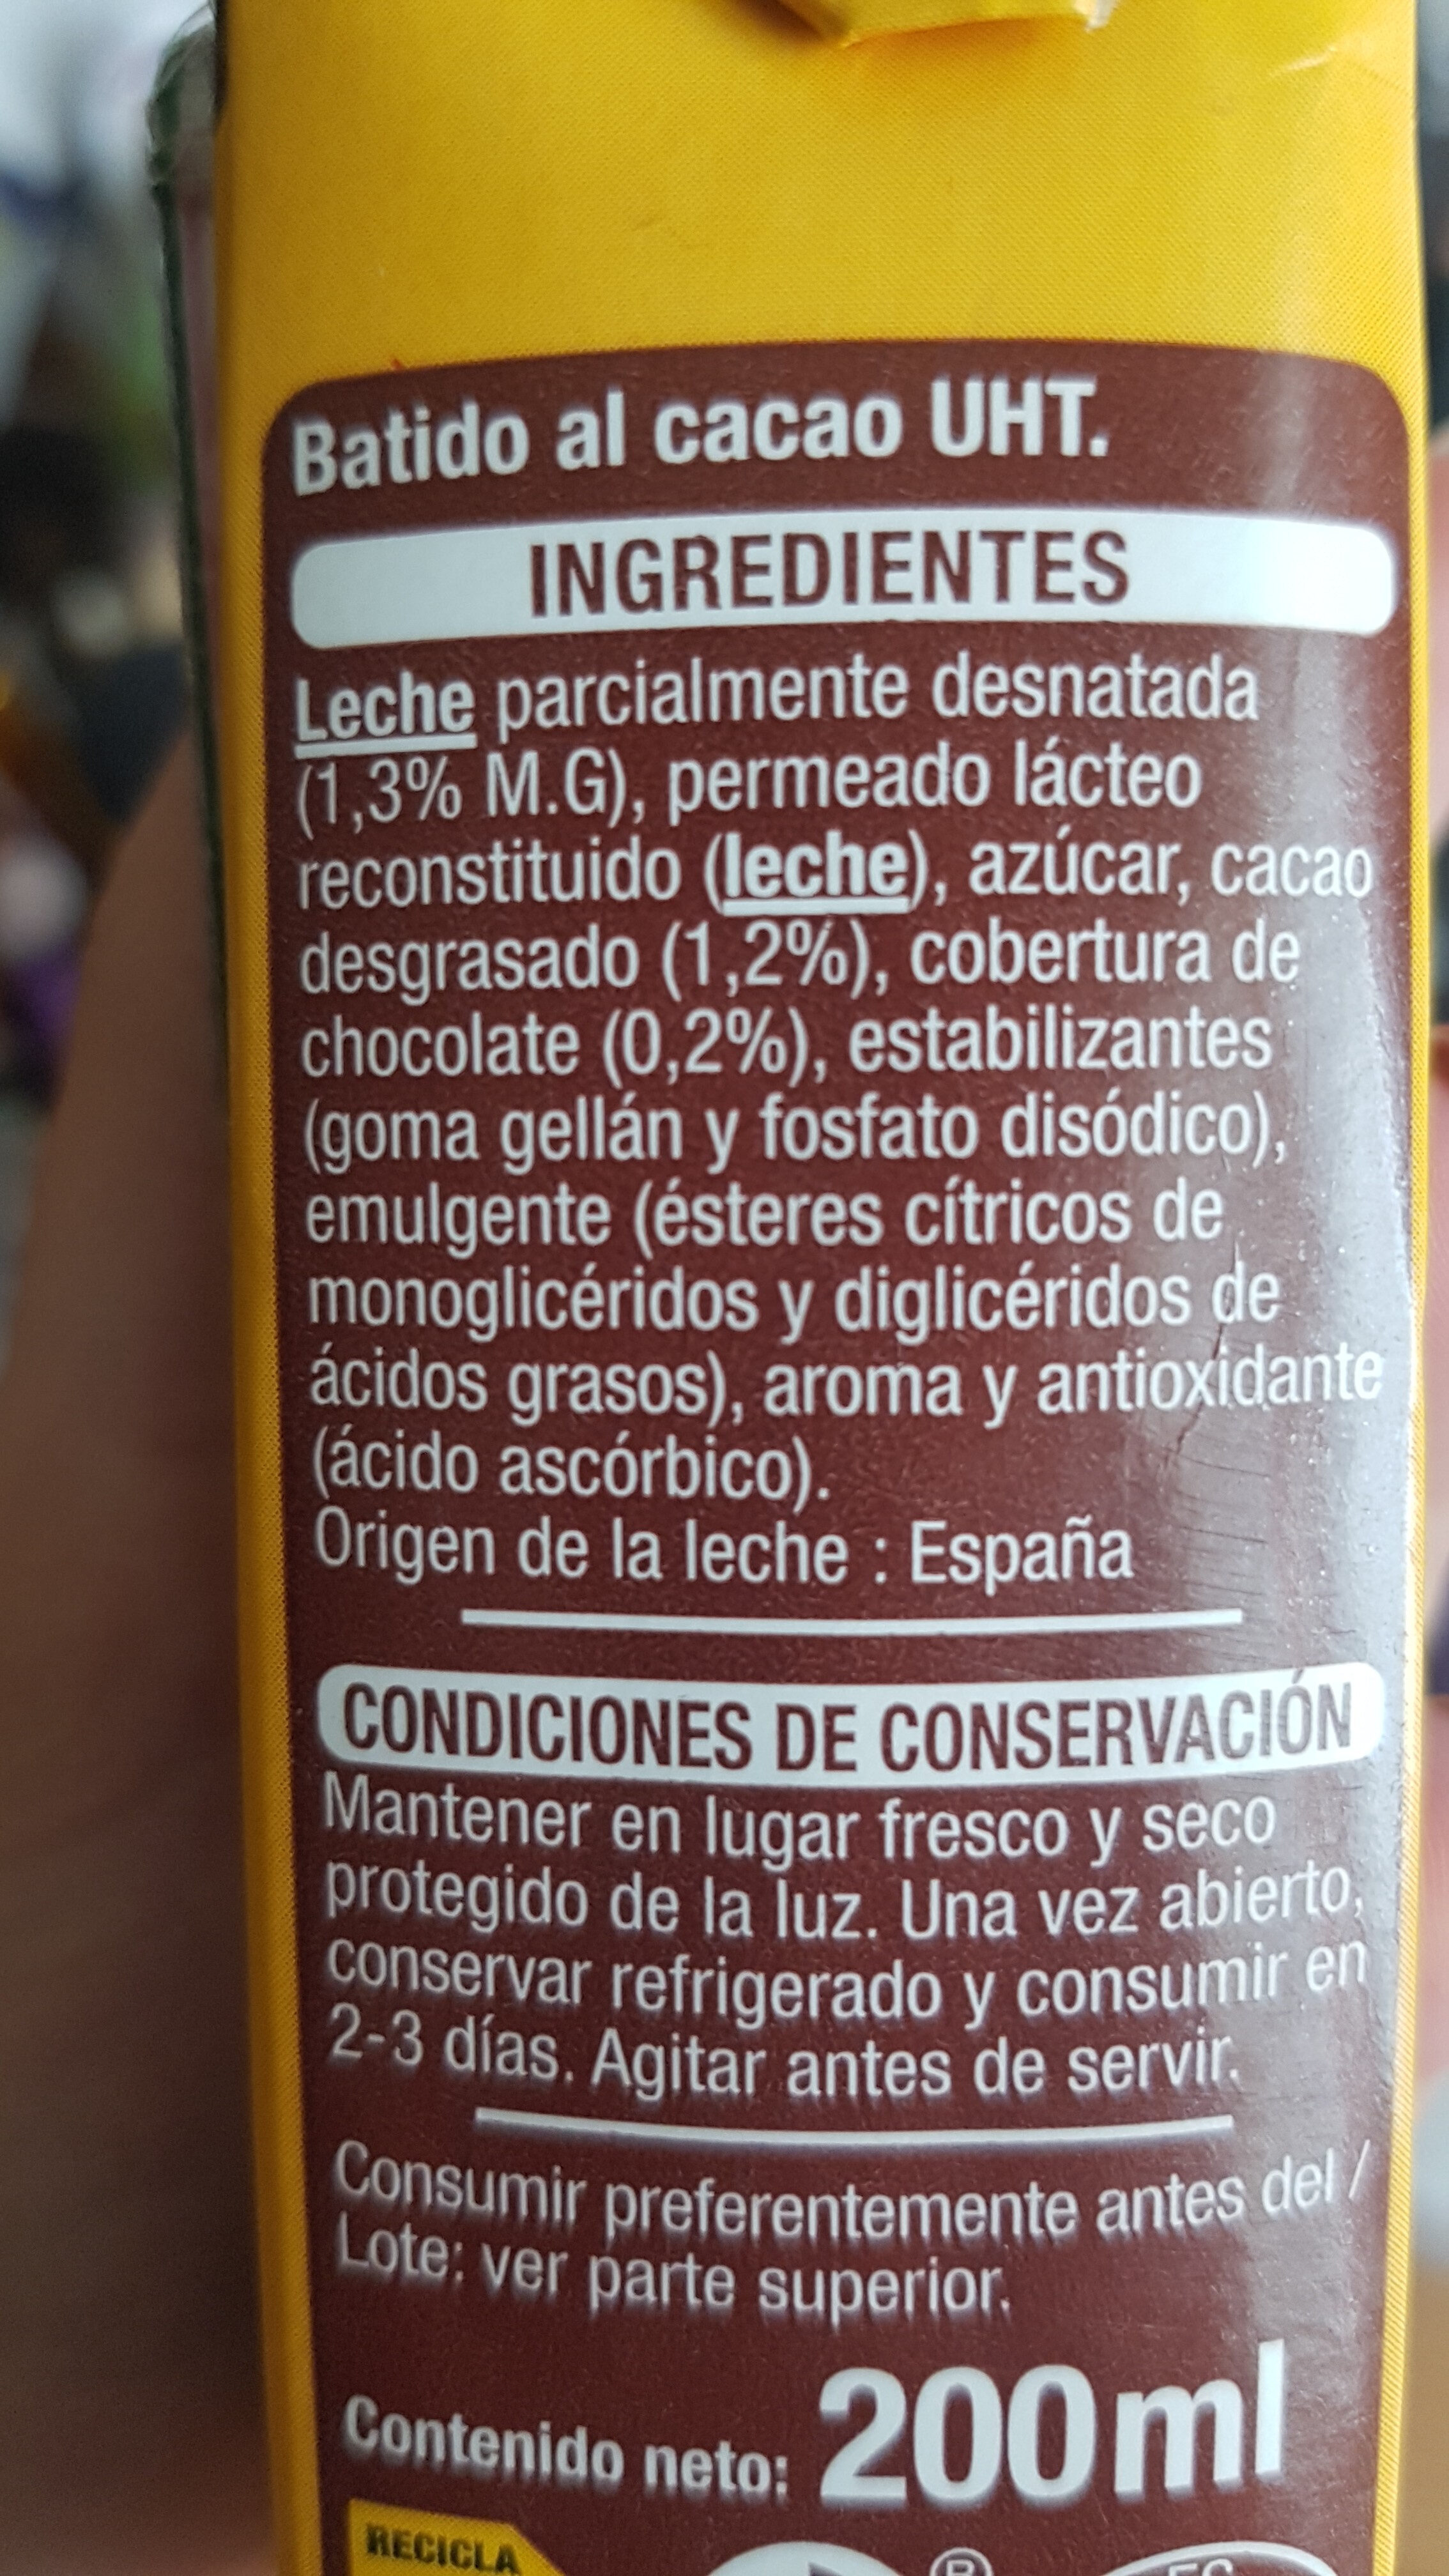 Batido al cacao - Ingredients - es